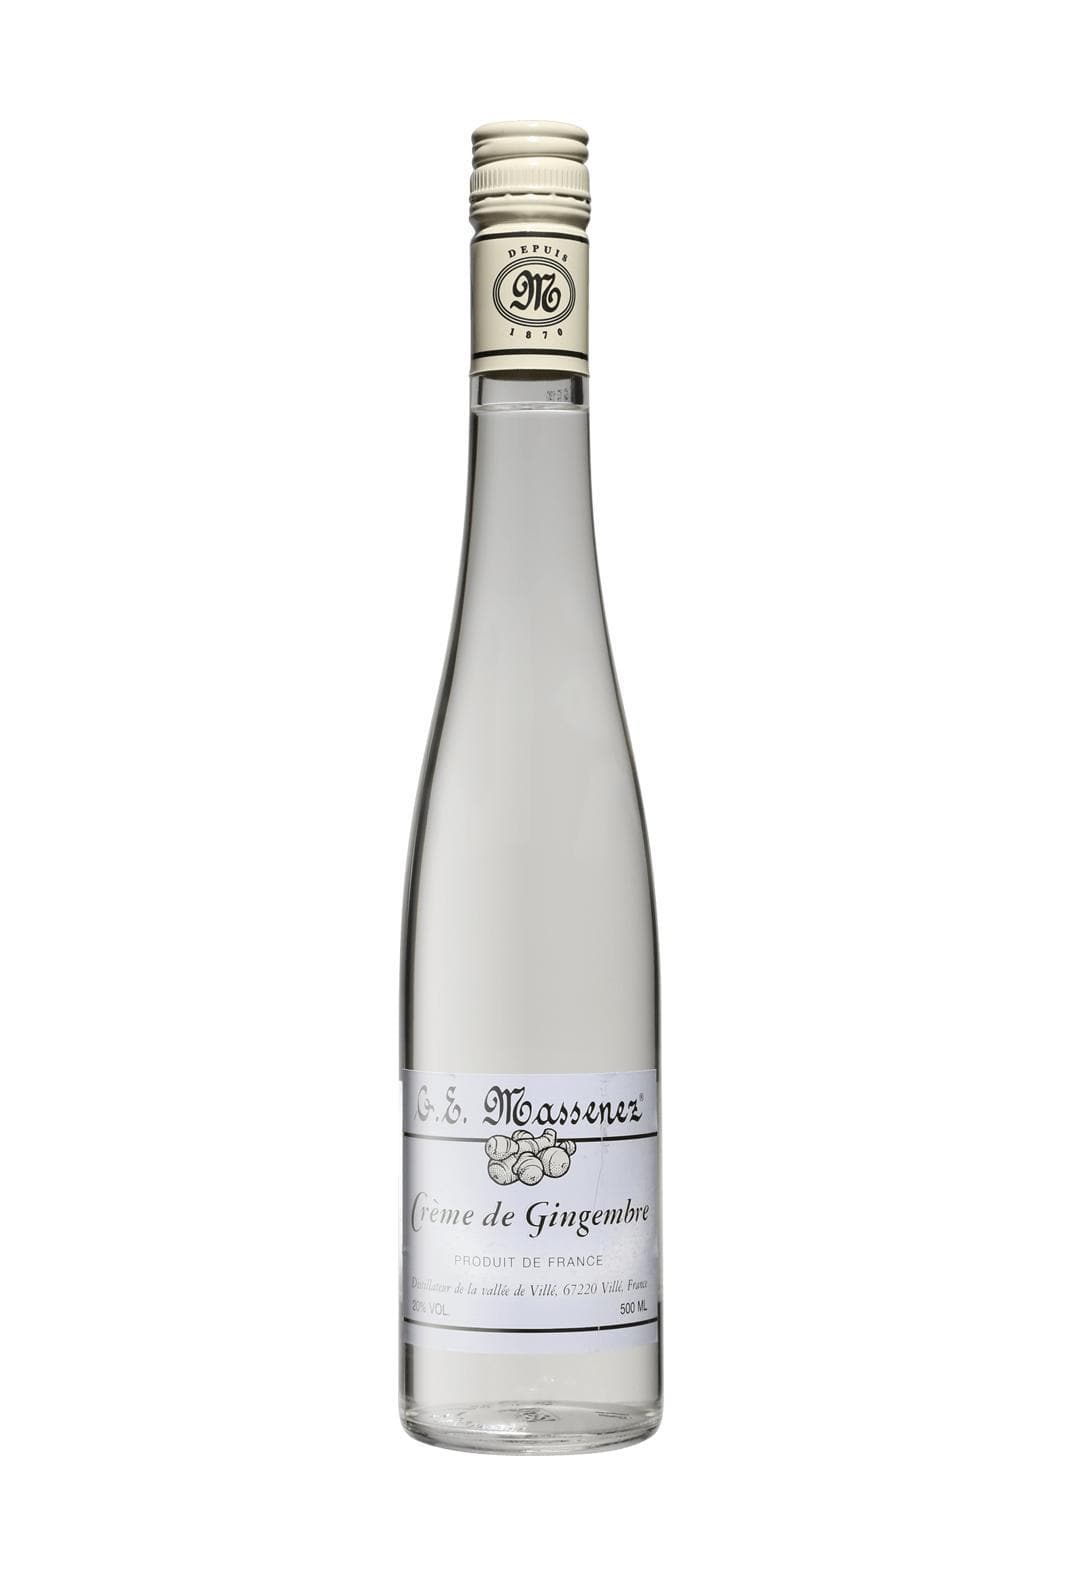 Massenez Liqueur Creme de Gingembre (Ginger) 20% 500ml | Liqueurs | Shop online at Spirits of France